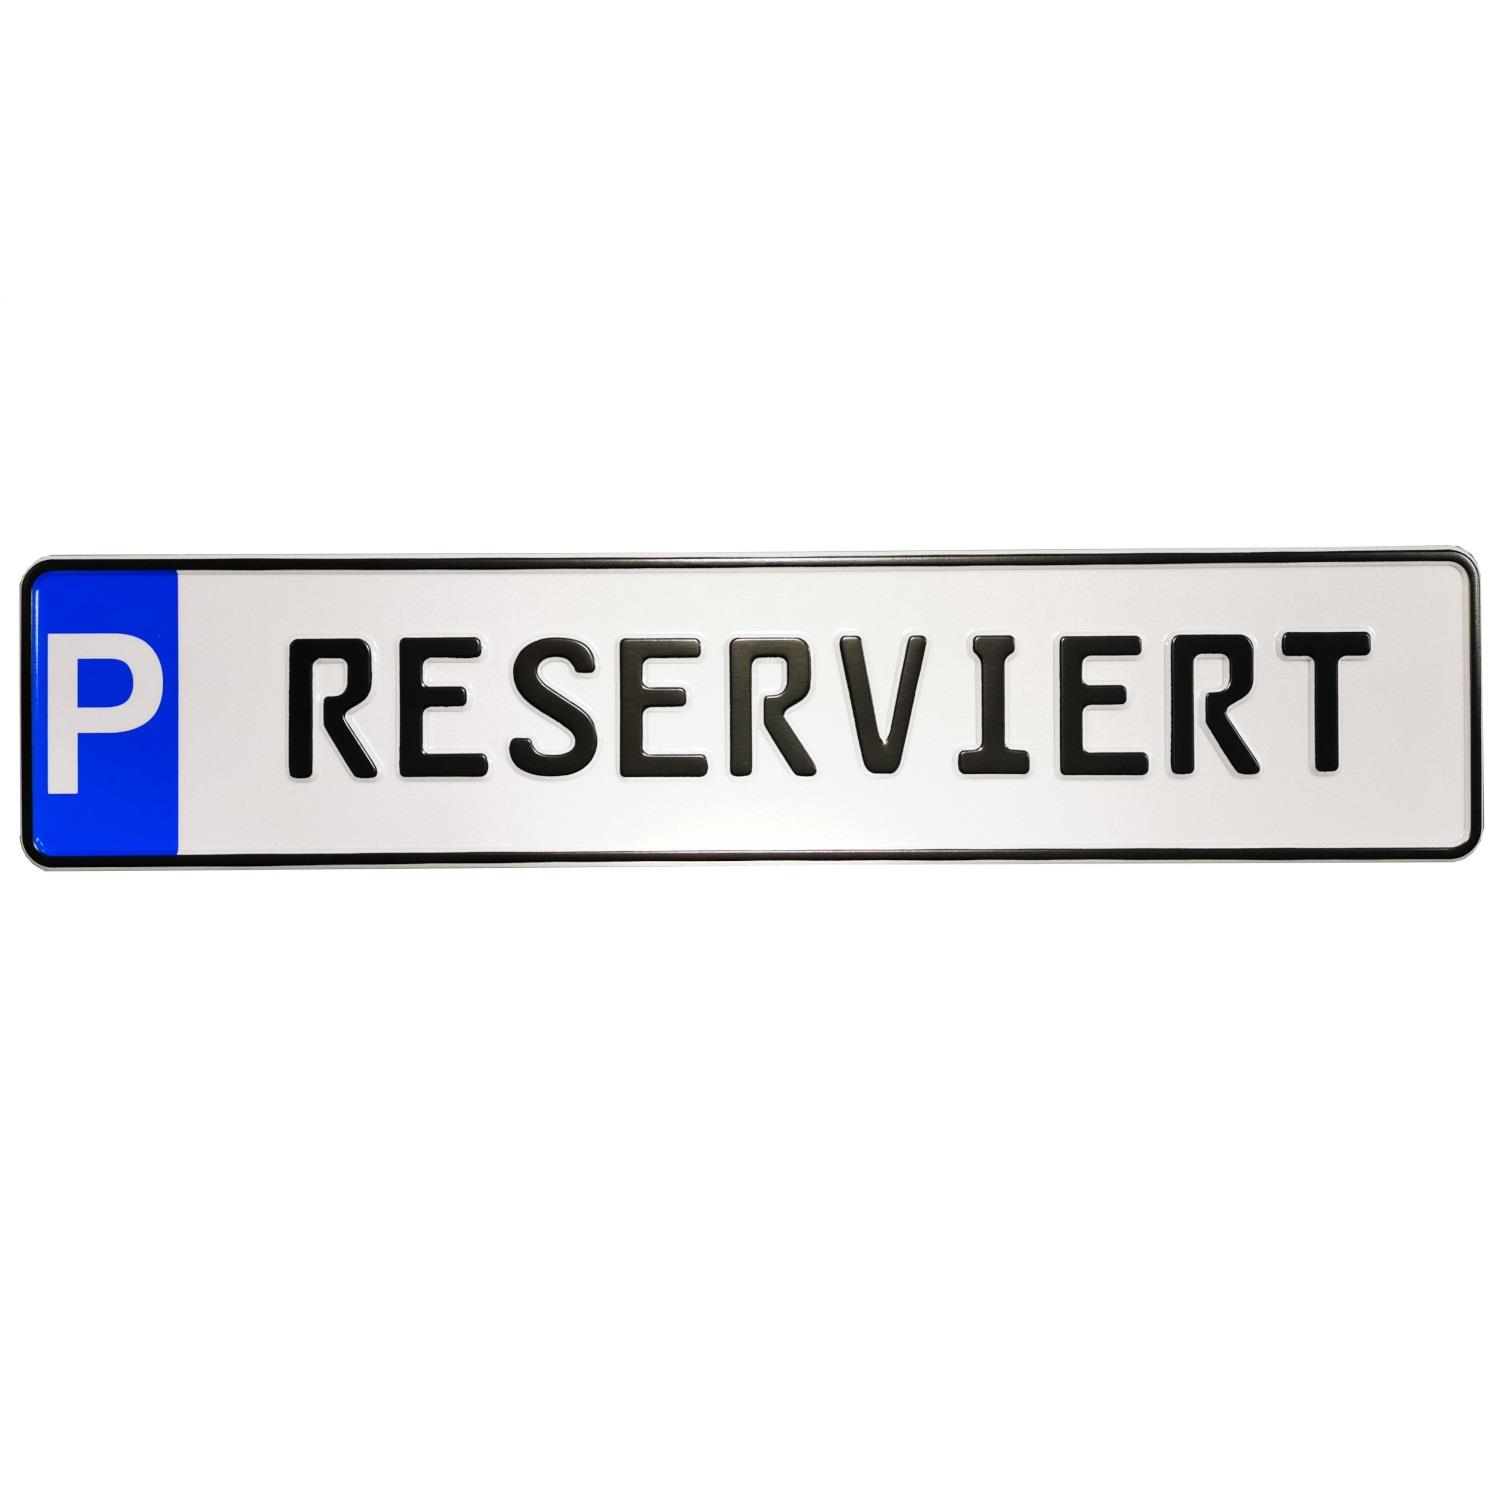 Schild zur Parkplatzkennzeichnung "P-RESERVIERT"- KFZ Normgröße, Kleinschrift, geprägt.